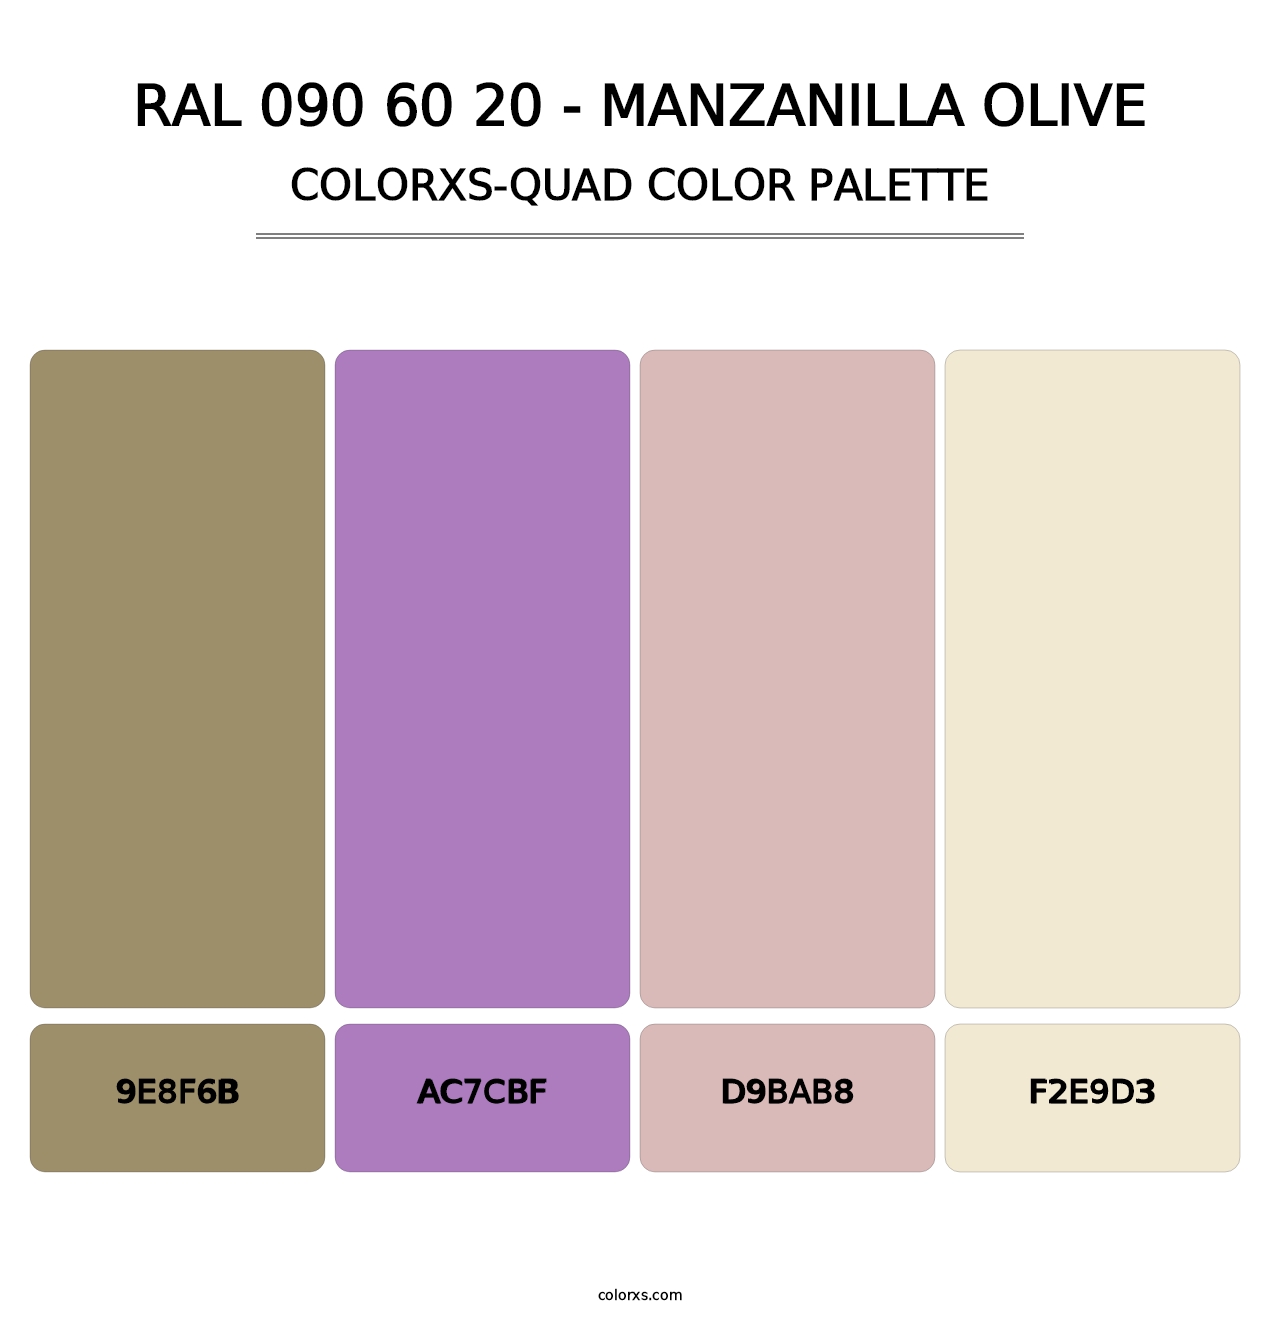 RAL 090 60 20 - Manzanilla Olive - Colorxs Quad Palette